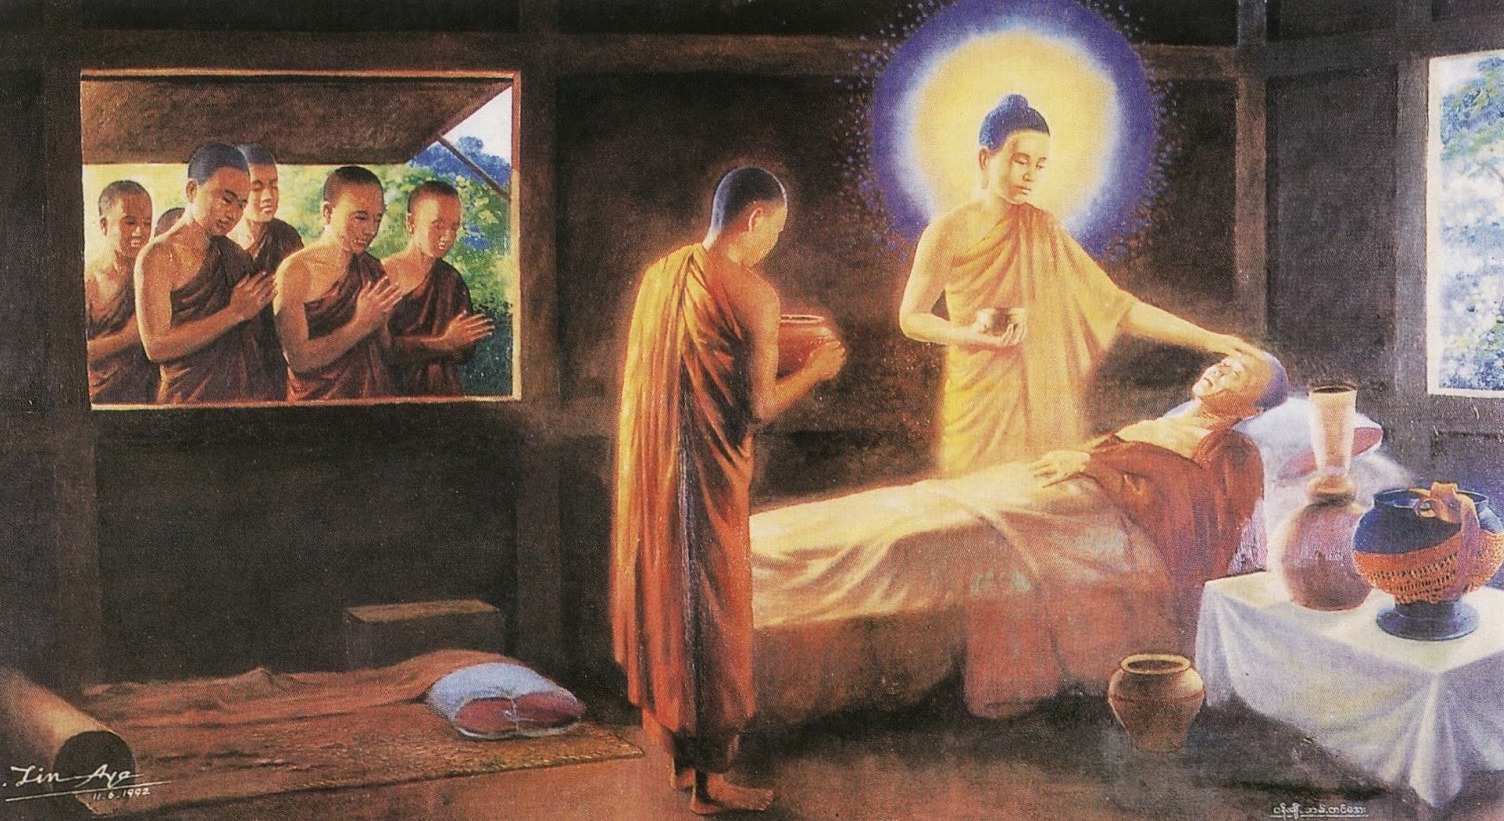 Tụng Kinh, Niệm Phật cho người sắp lâm chung